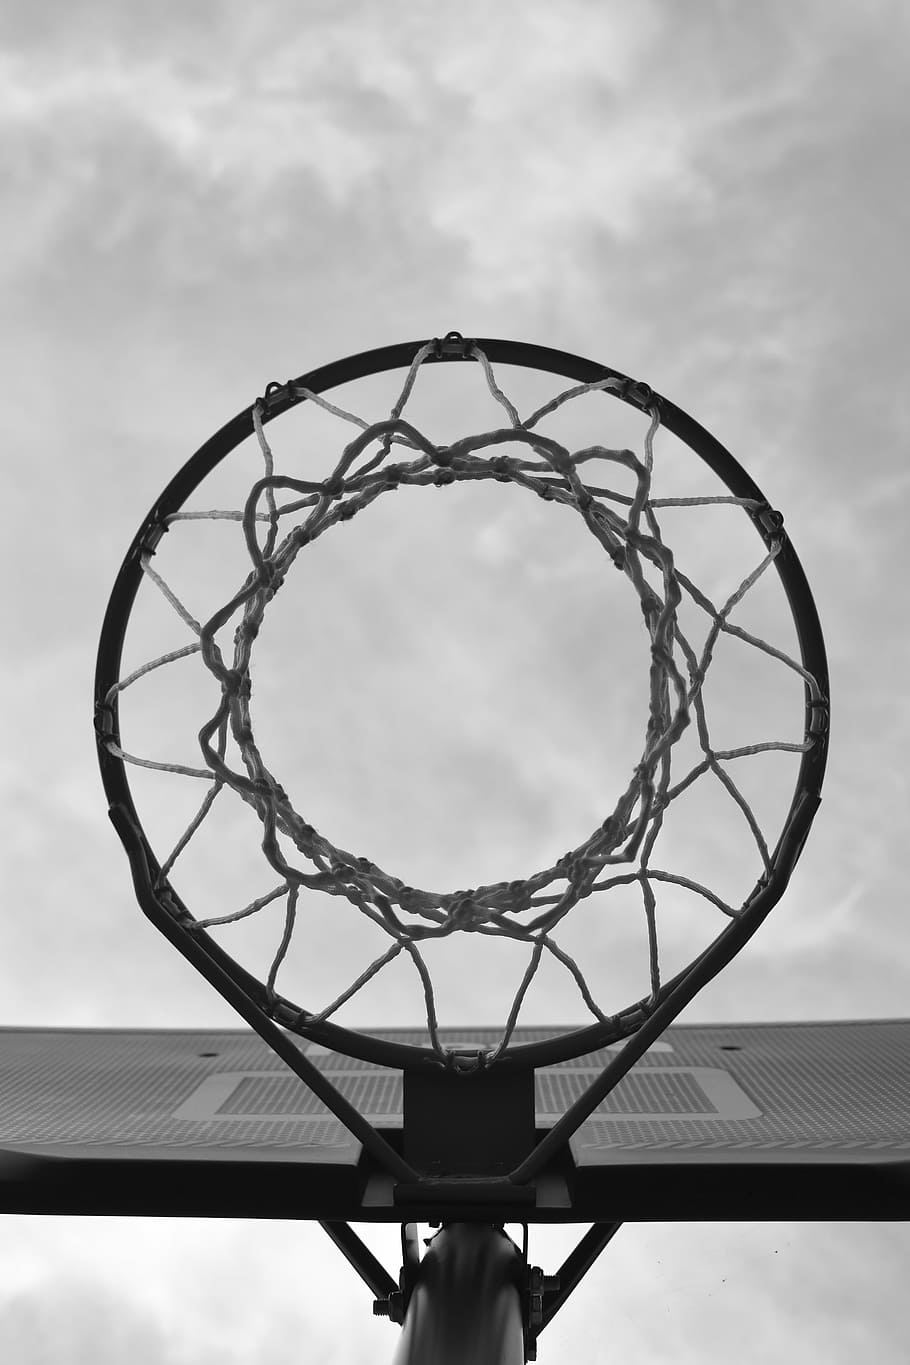 HD wallpaper: bottom shot photo of basketball hoop, sport, net, urban, basketball